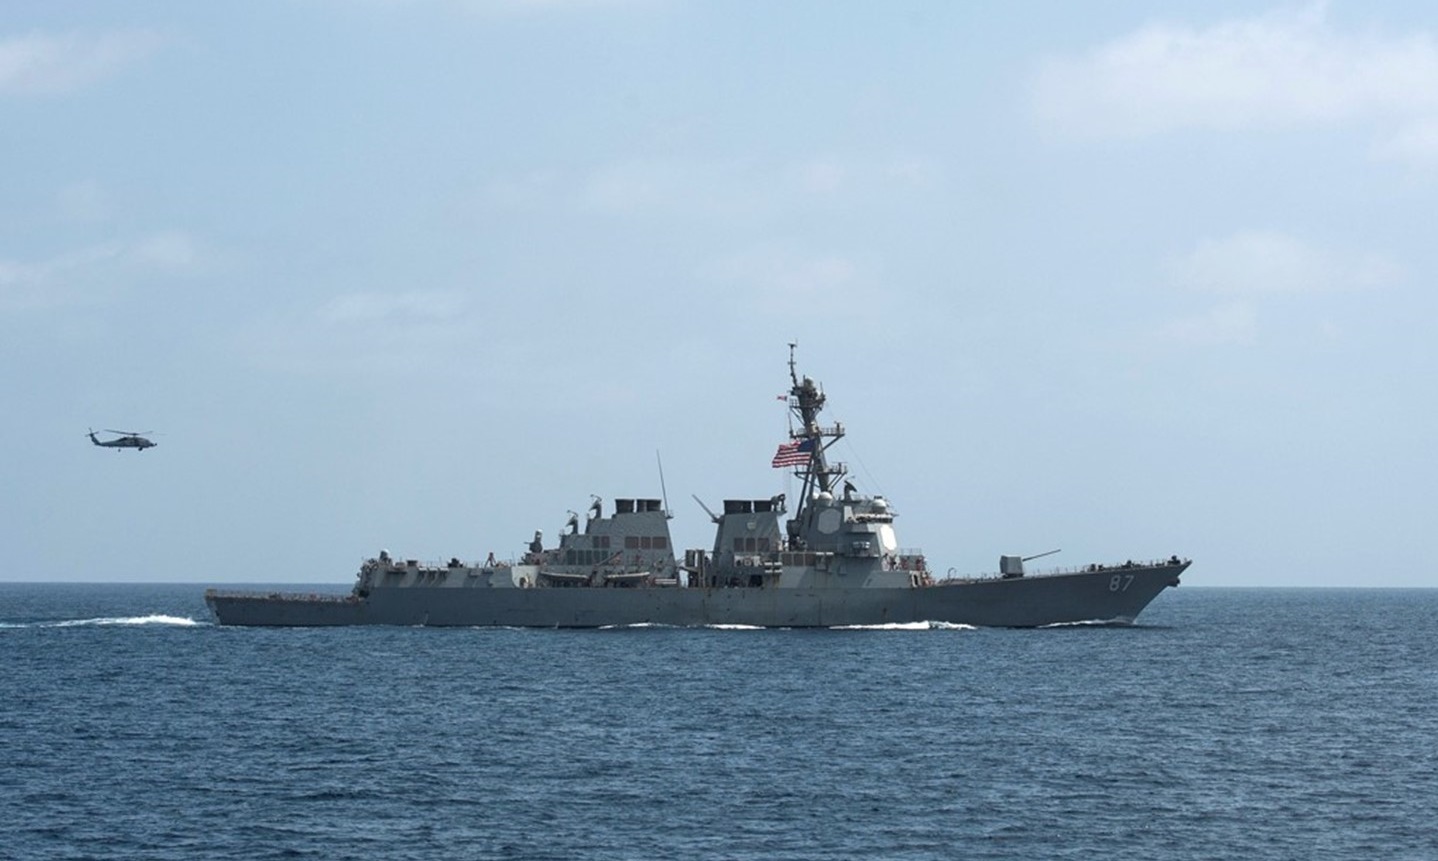 القوات المسلحة اليمنية تعلن استهداف سفينة امريكية في خليجِ عدن